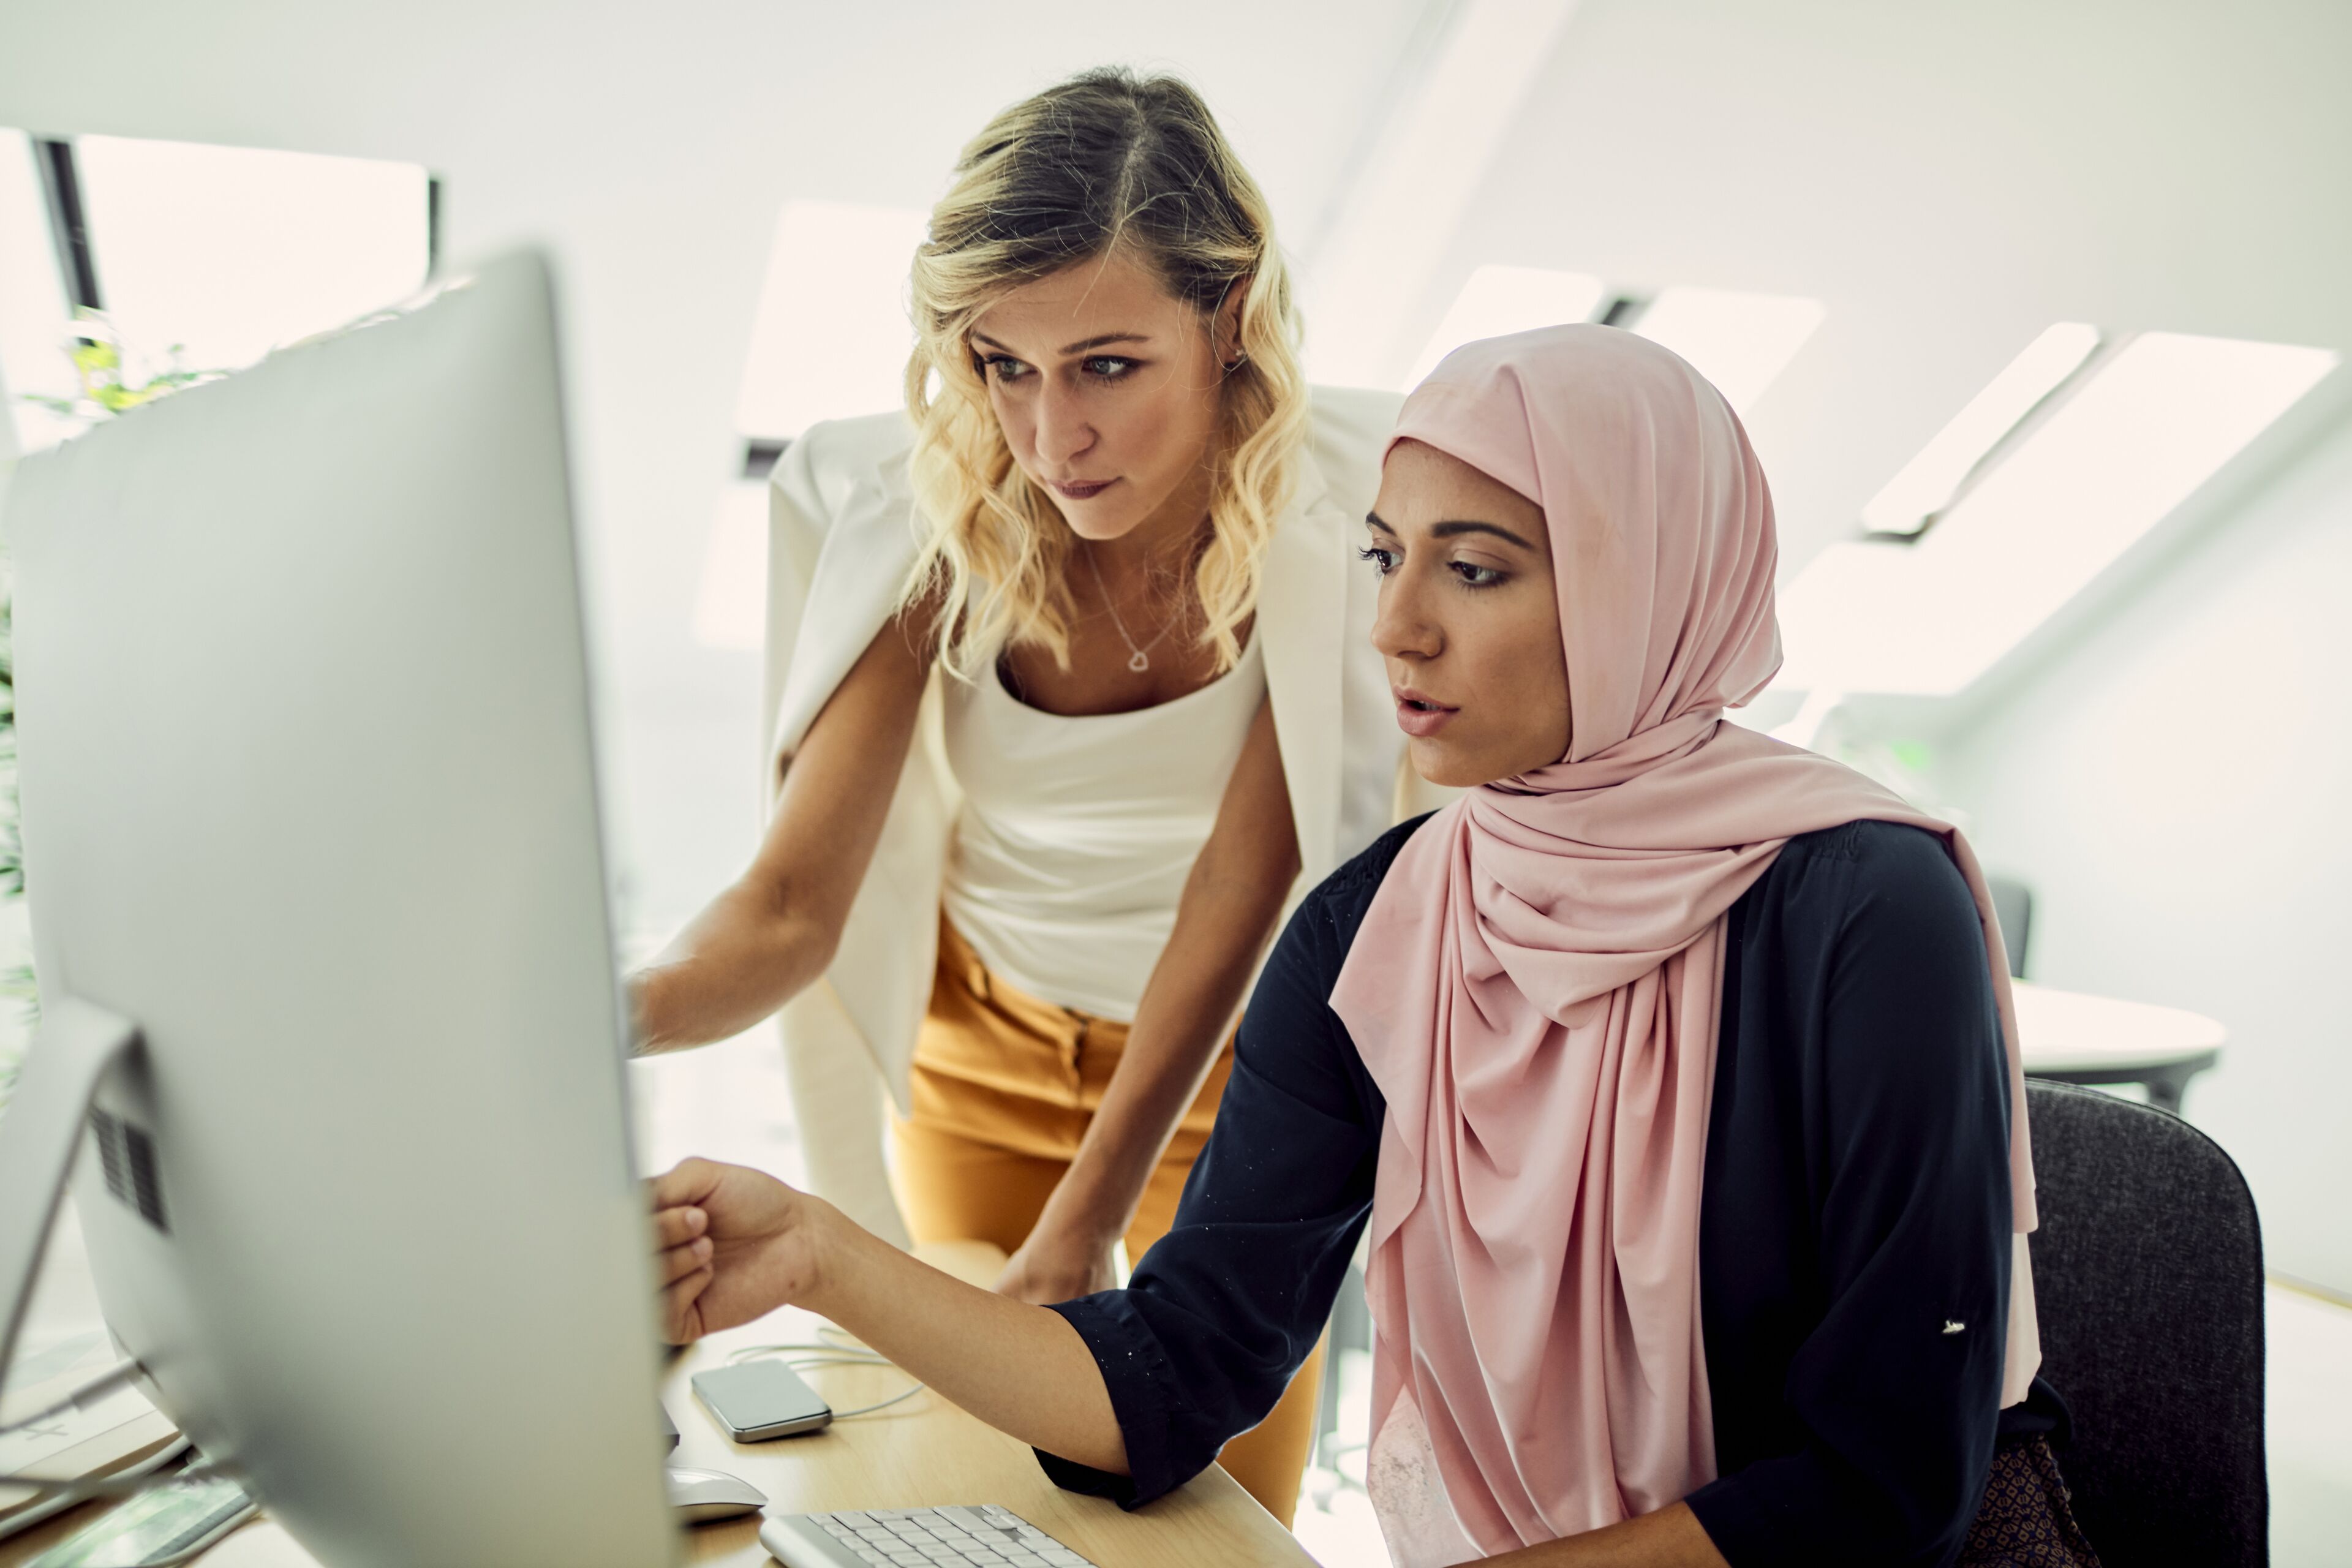 Deux femmes, une blonde et une autre portant un hijab, se concentrent sur un écran d'ordinateur, collaborant dans un environnement de bureau moderne.